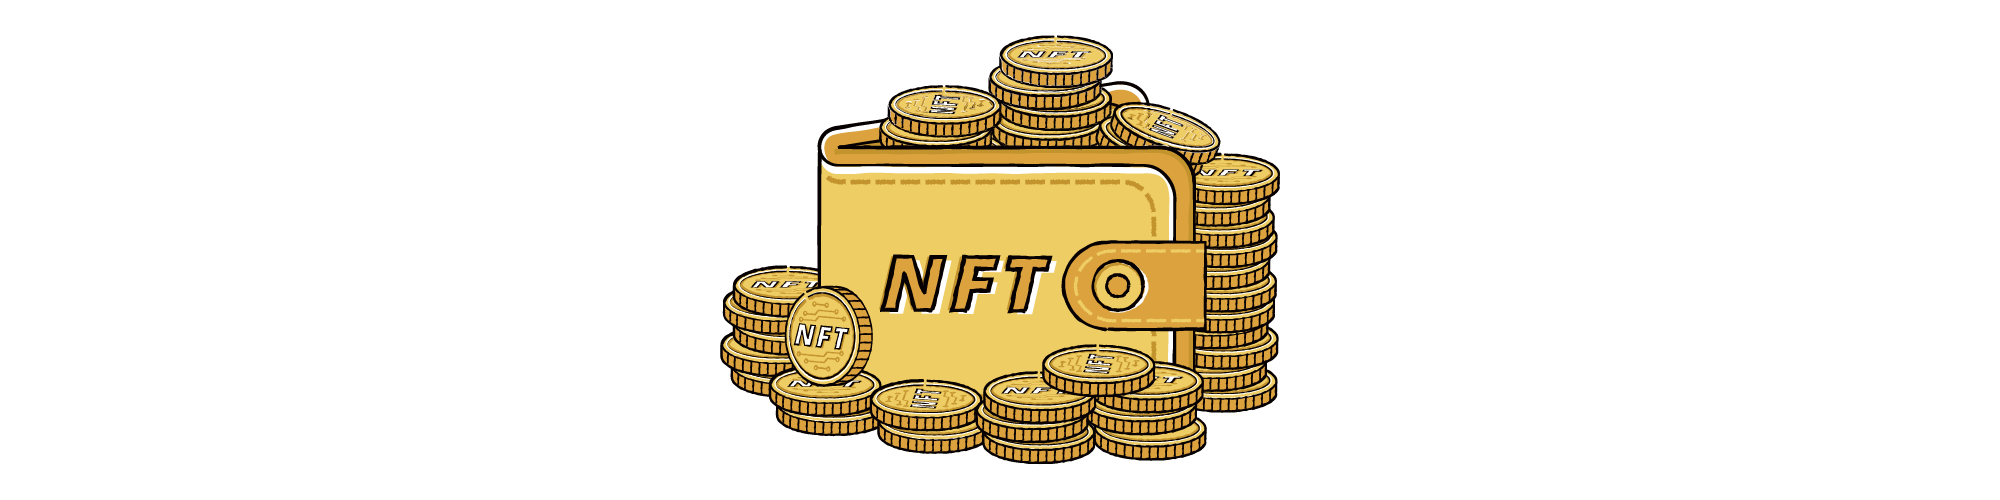 NFT Wallet